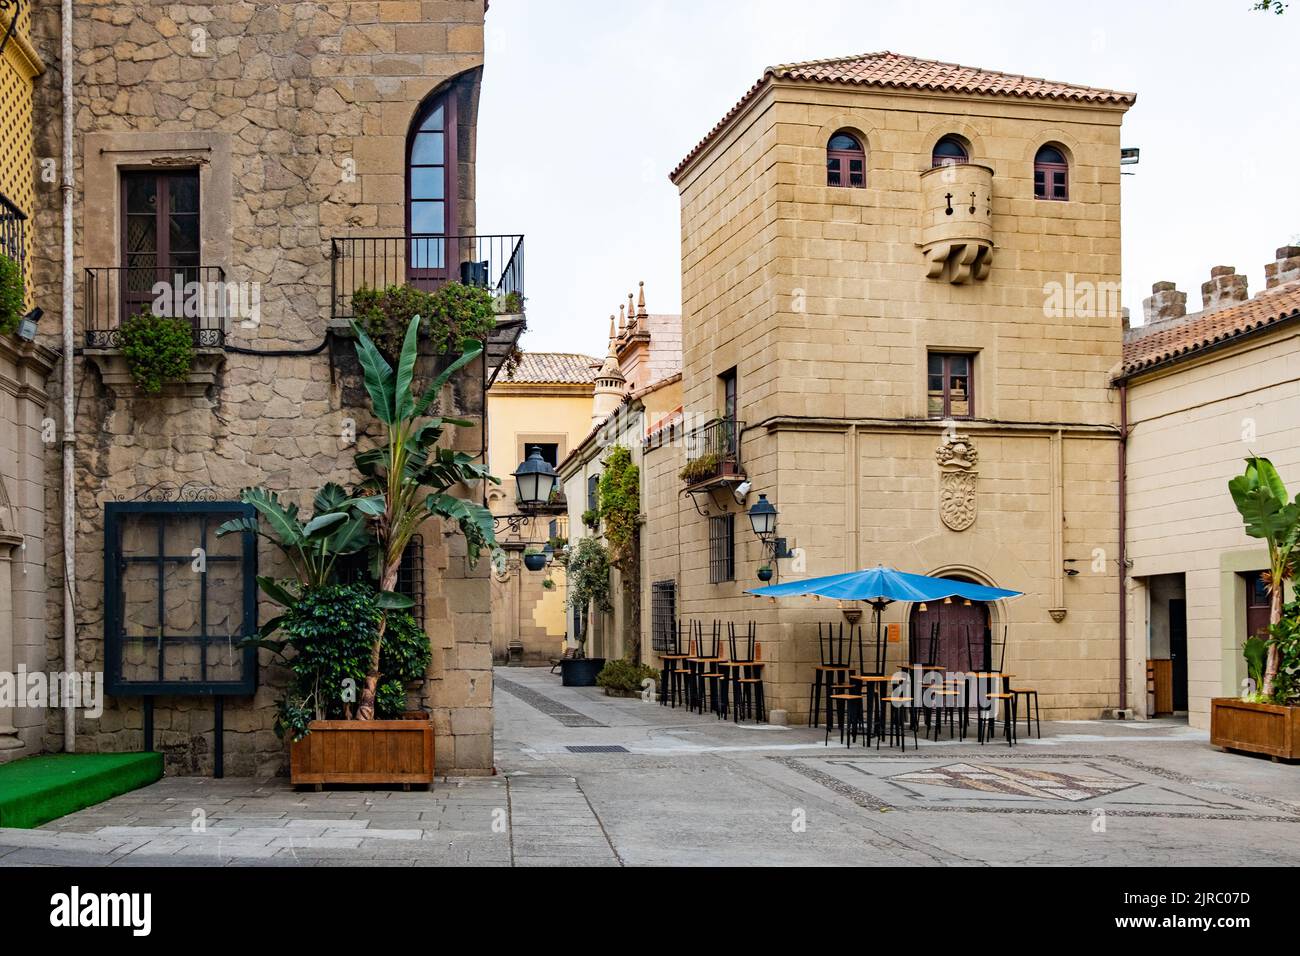 Poble Espanyol mit traditionellen spanischen Architekturen in Barcelona, Spanien. Niemand, traditionelles spanisches Dorf Stockfoto